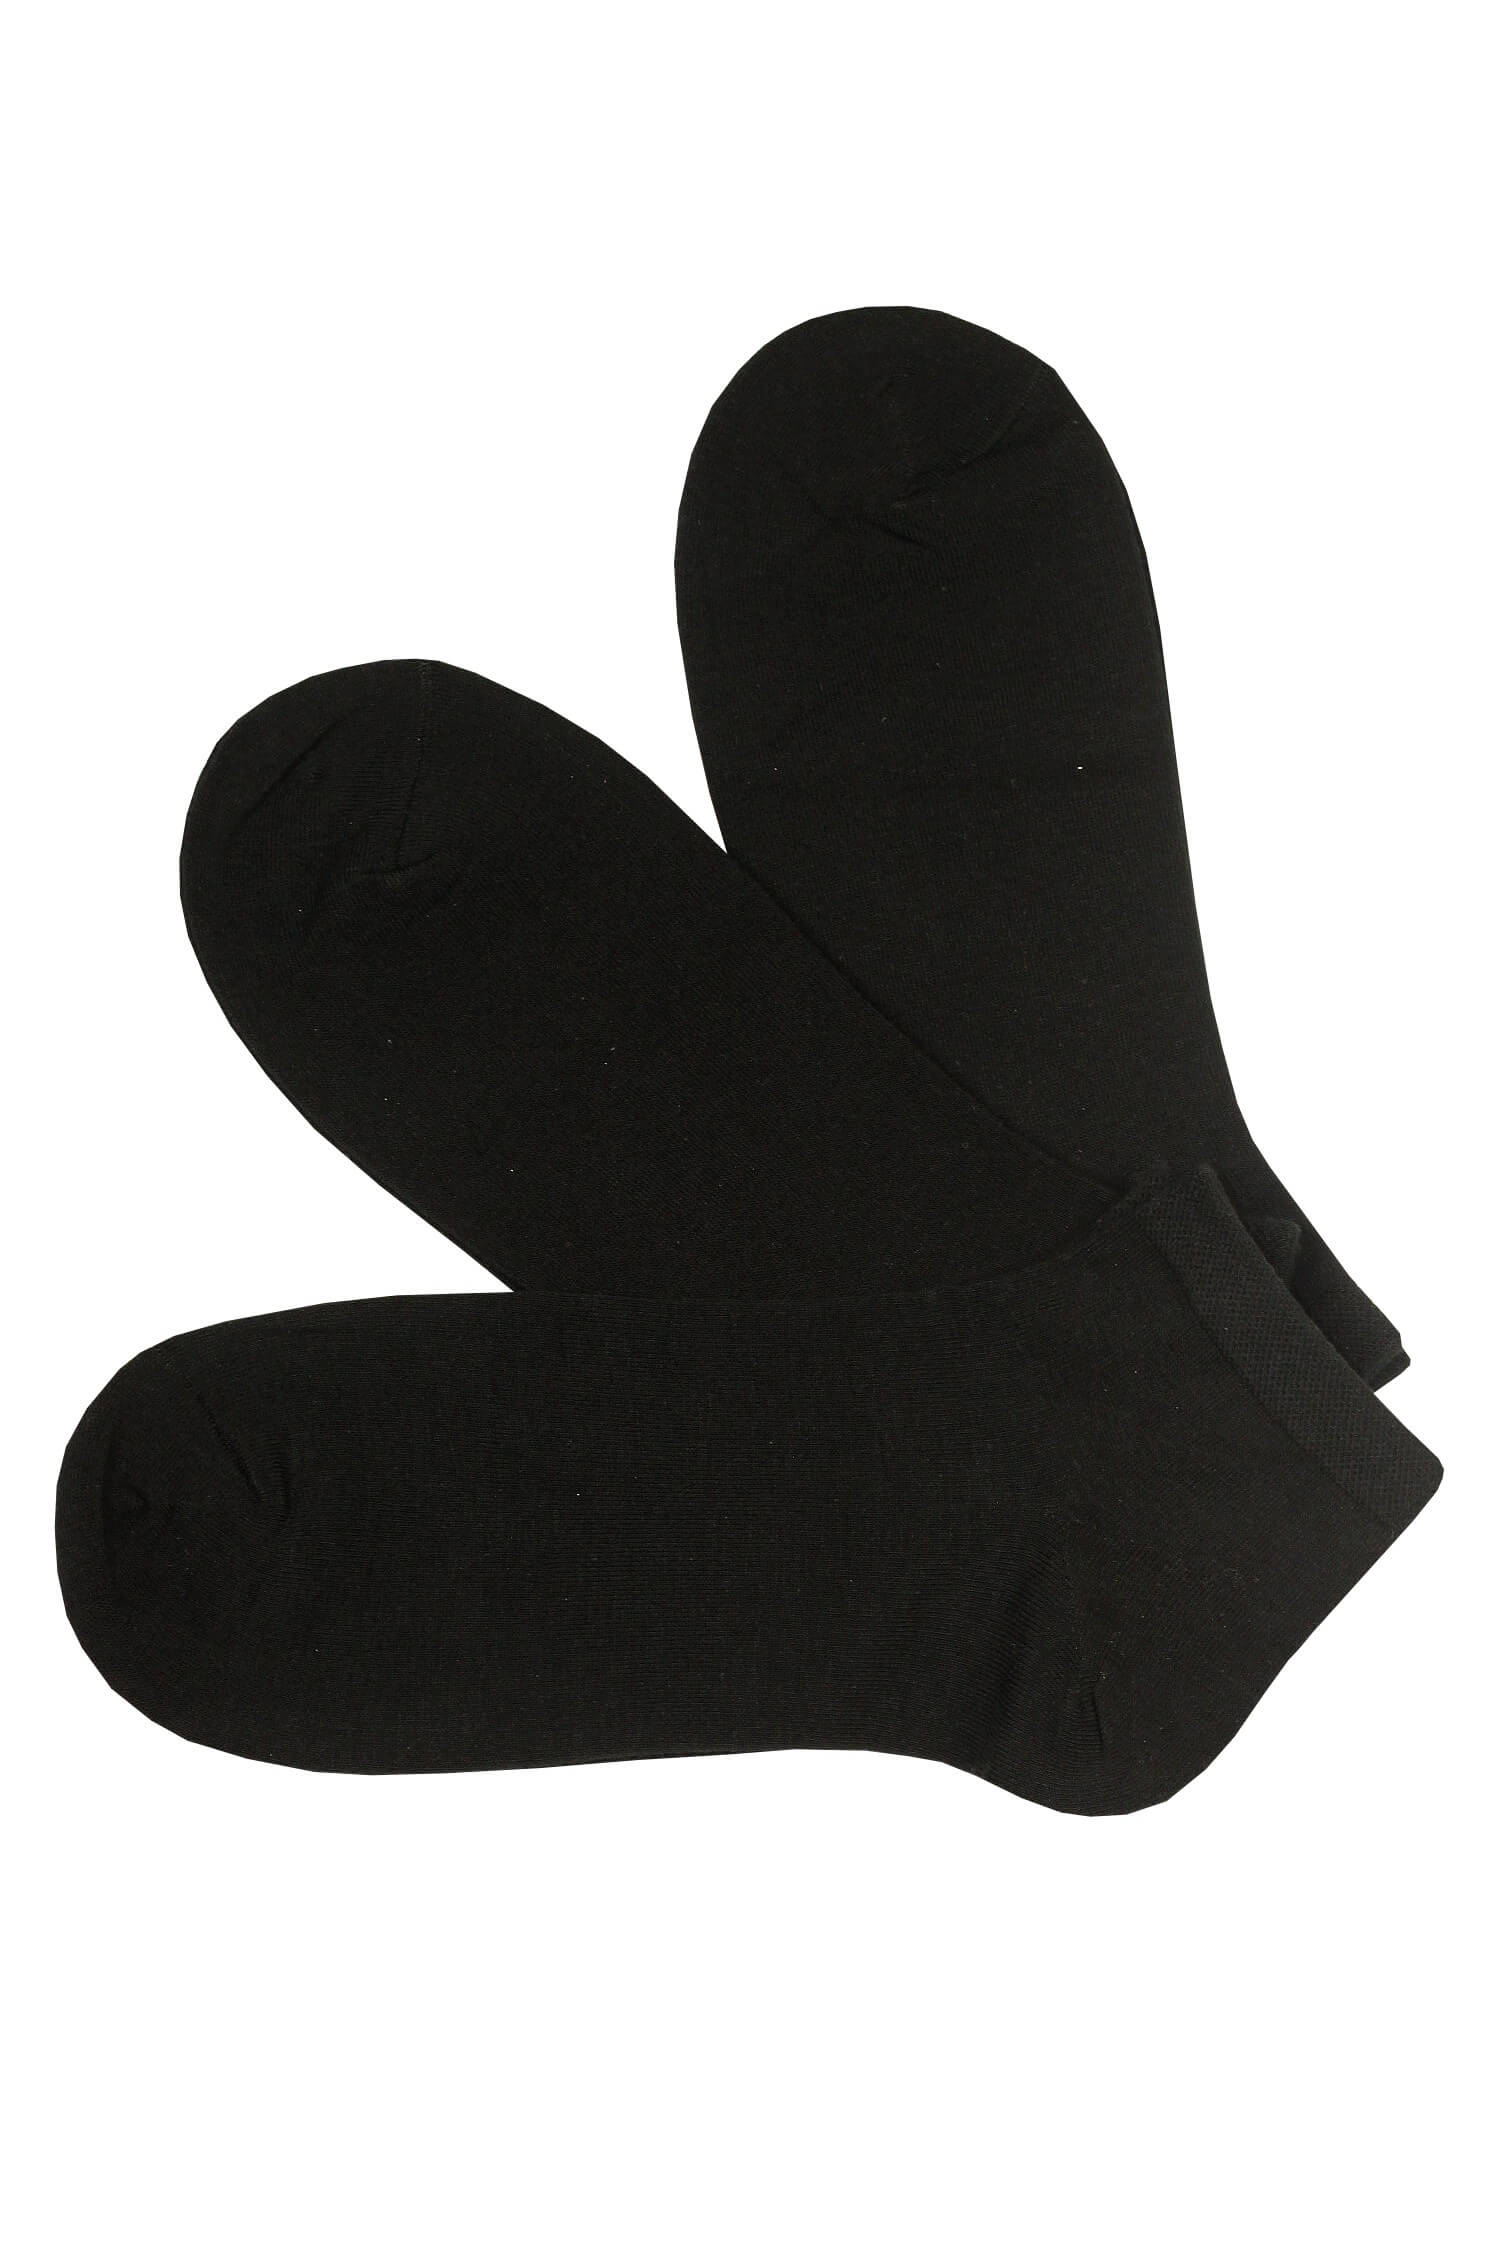 Kvalitní kotníkové ponožky bavlna IM10C - 3 páry 40-43 černá